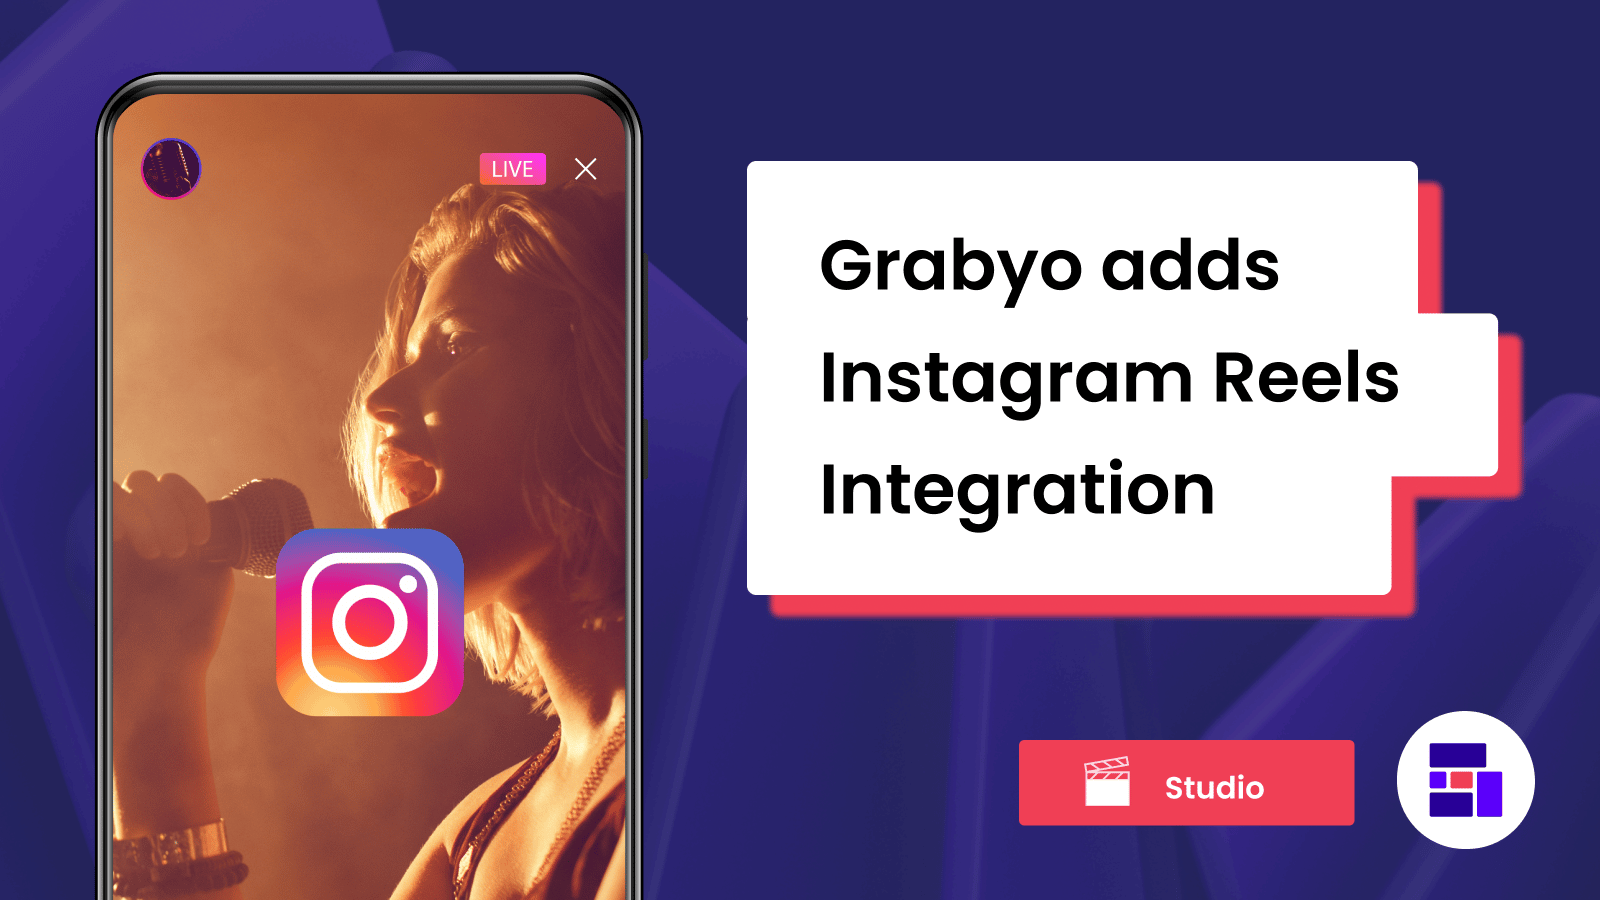 Grabyo adds Instagram Reels